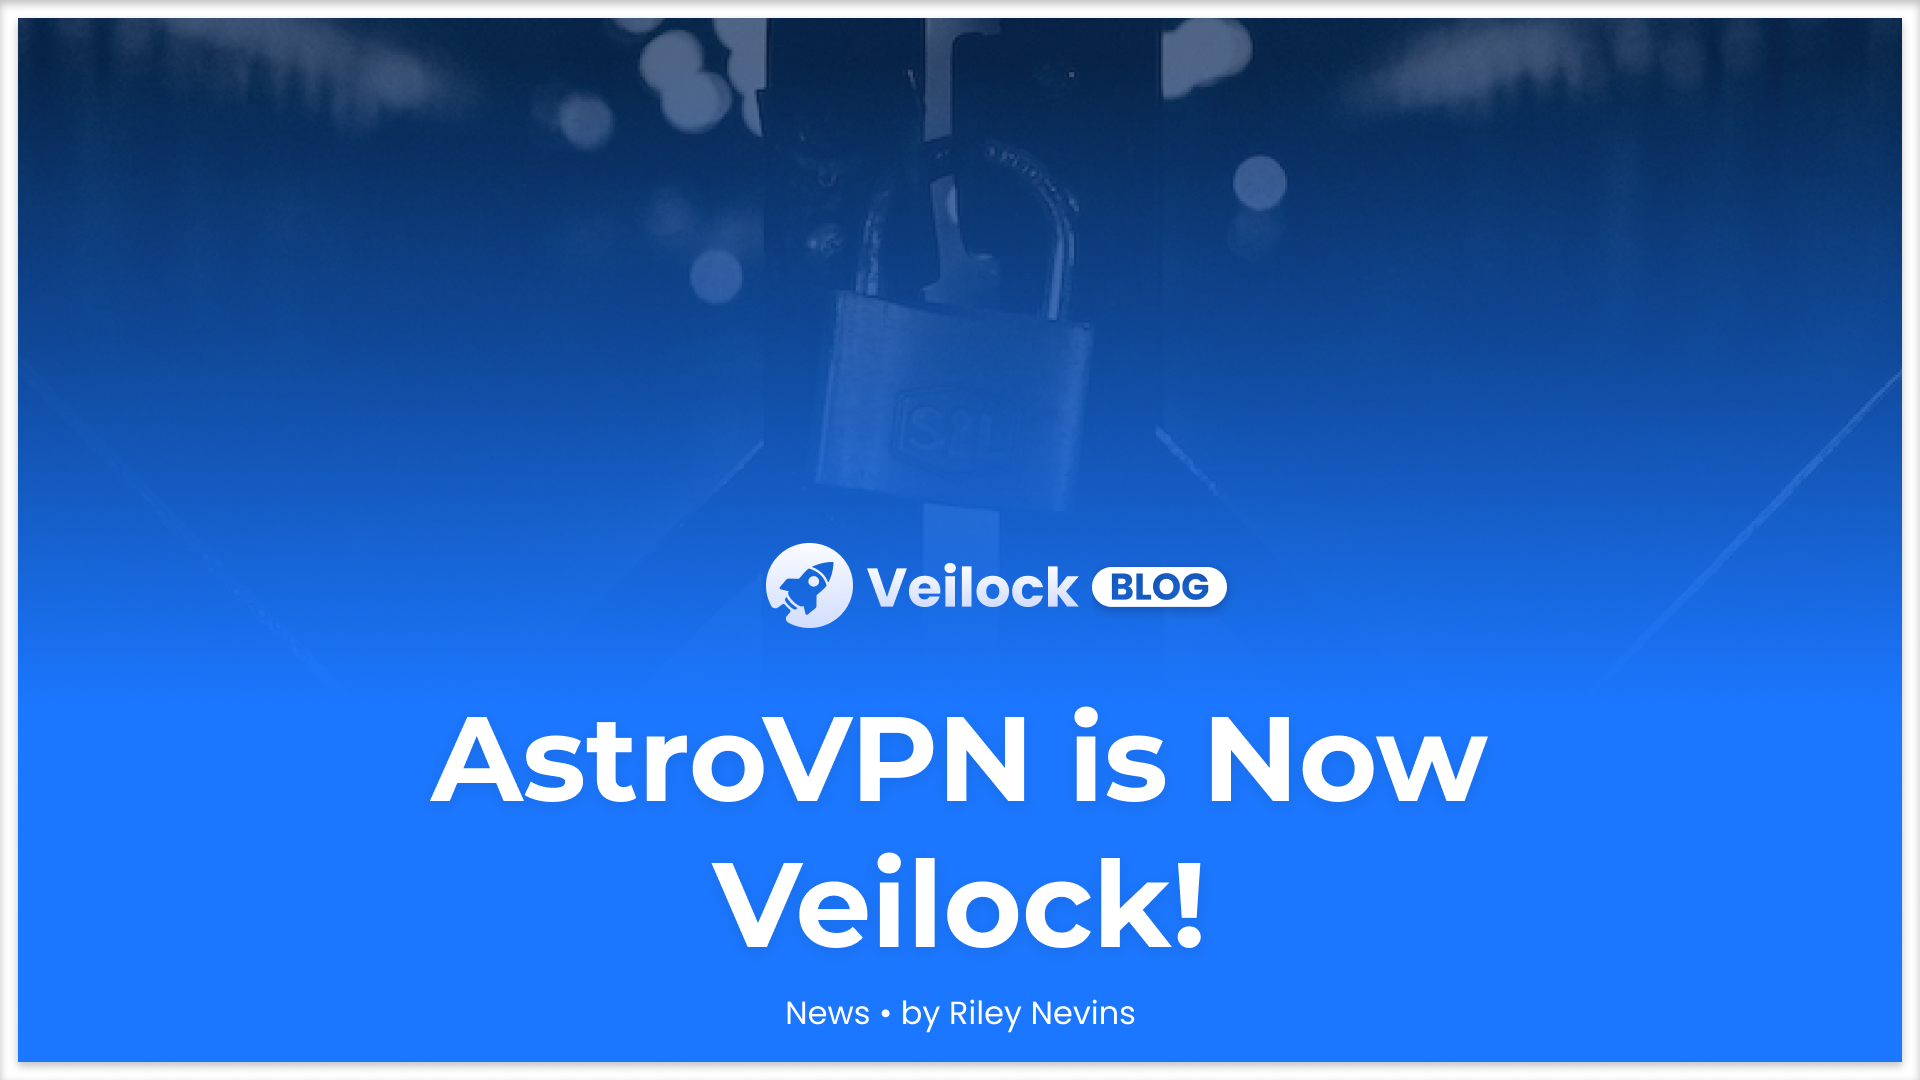 AstroVPN Rebrands to Veilock!